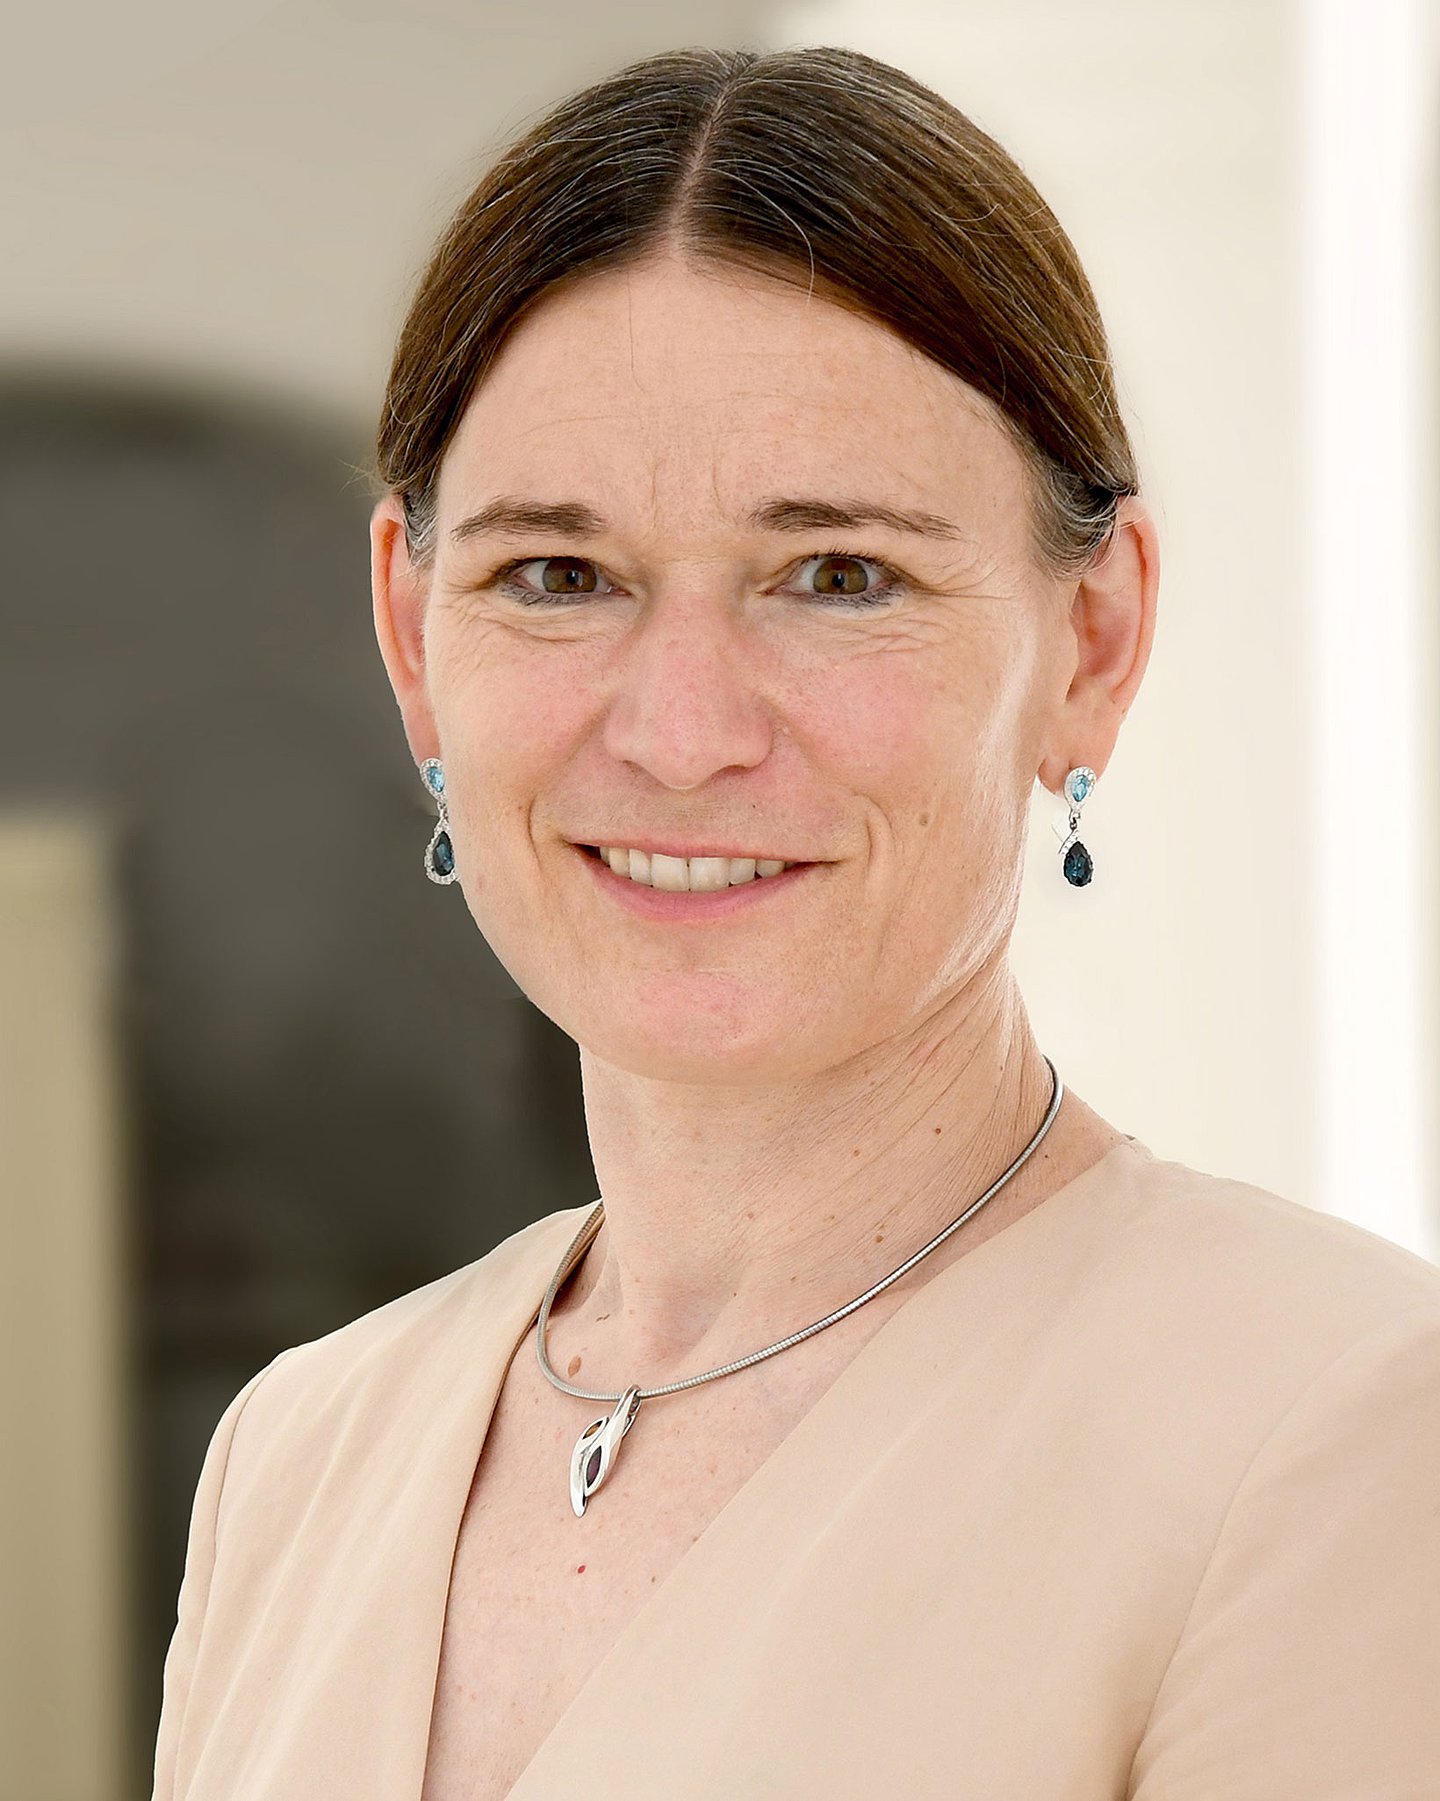 Porträt von Universitätsprofessorin Dr. Sabine Ludwig, Direktorin des Instituts für Diversität in der Medizin an der Medizinischen Universität in Innsbruck in Österreich